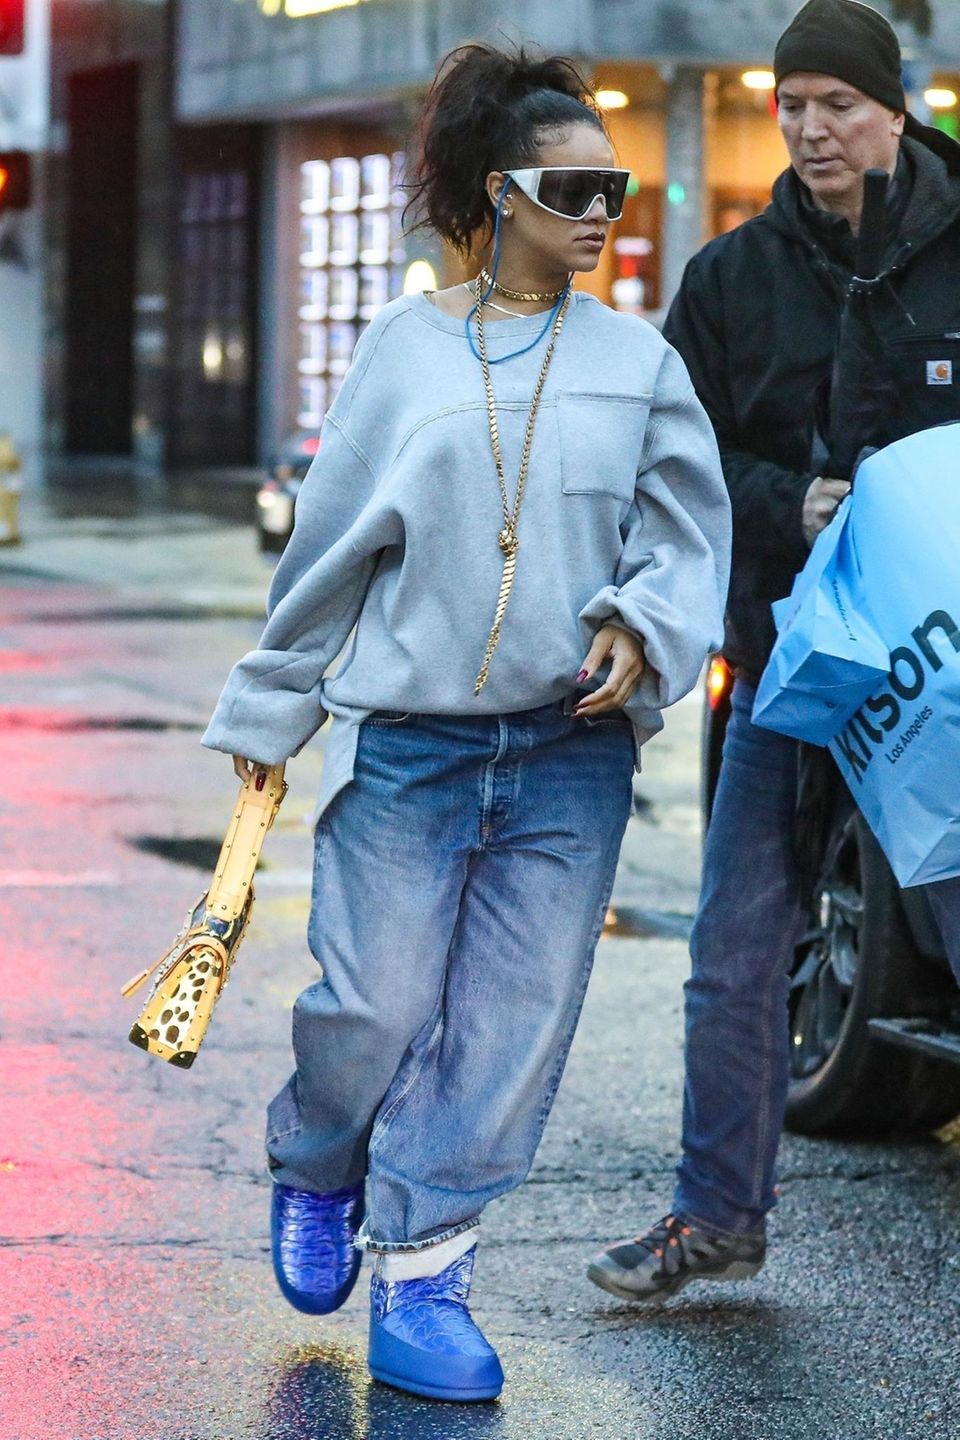 Alles, was Rihanna trägt, wird zum Trend. Dieser Look ist keine Ausnahme. In lässiger Baggyhose und XL-Sweater zeigt sich die schwangere Sängerin beim Shoppen in Los Angeles. Highlight ihres Looks: Die leuchtend blauen Cloud-Boots, bei denen es sicherlich nur einer Frage der Zeit ist, bis sie ausverkauft sind.